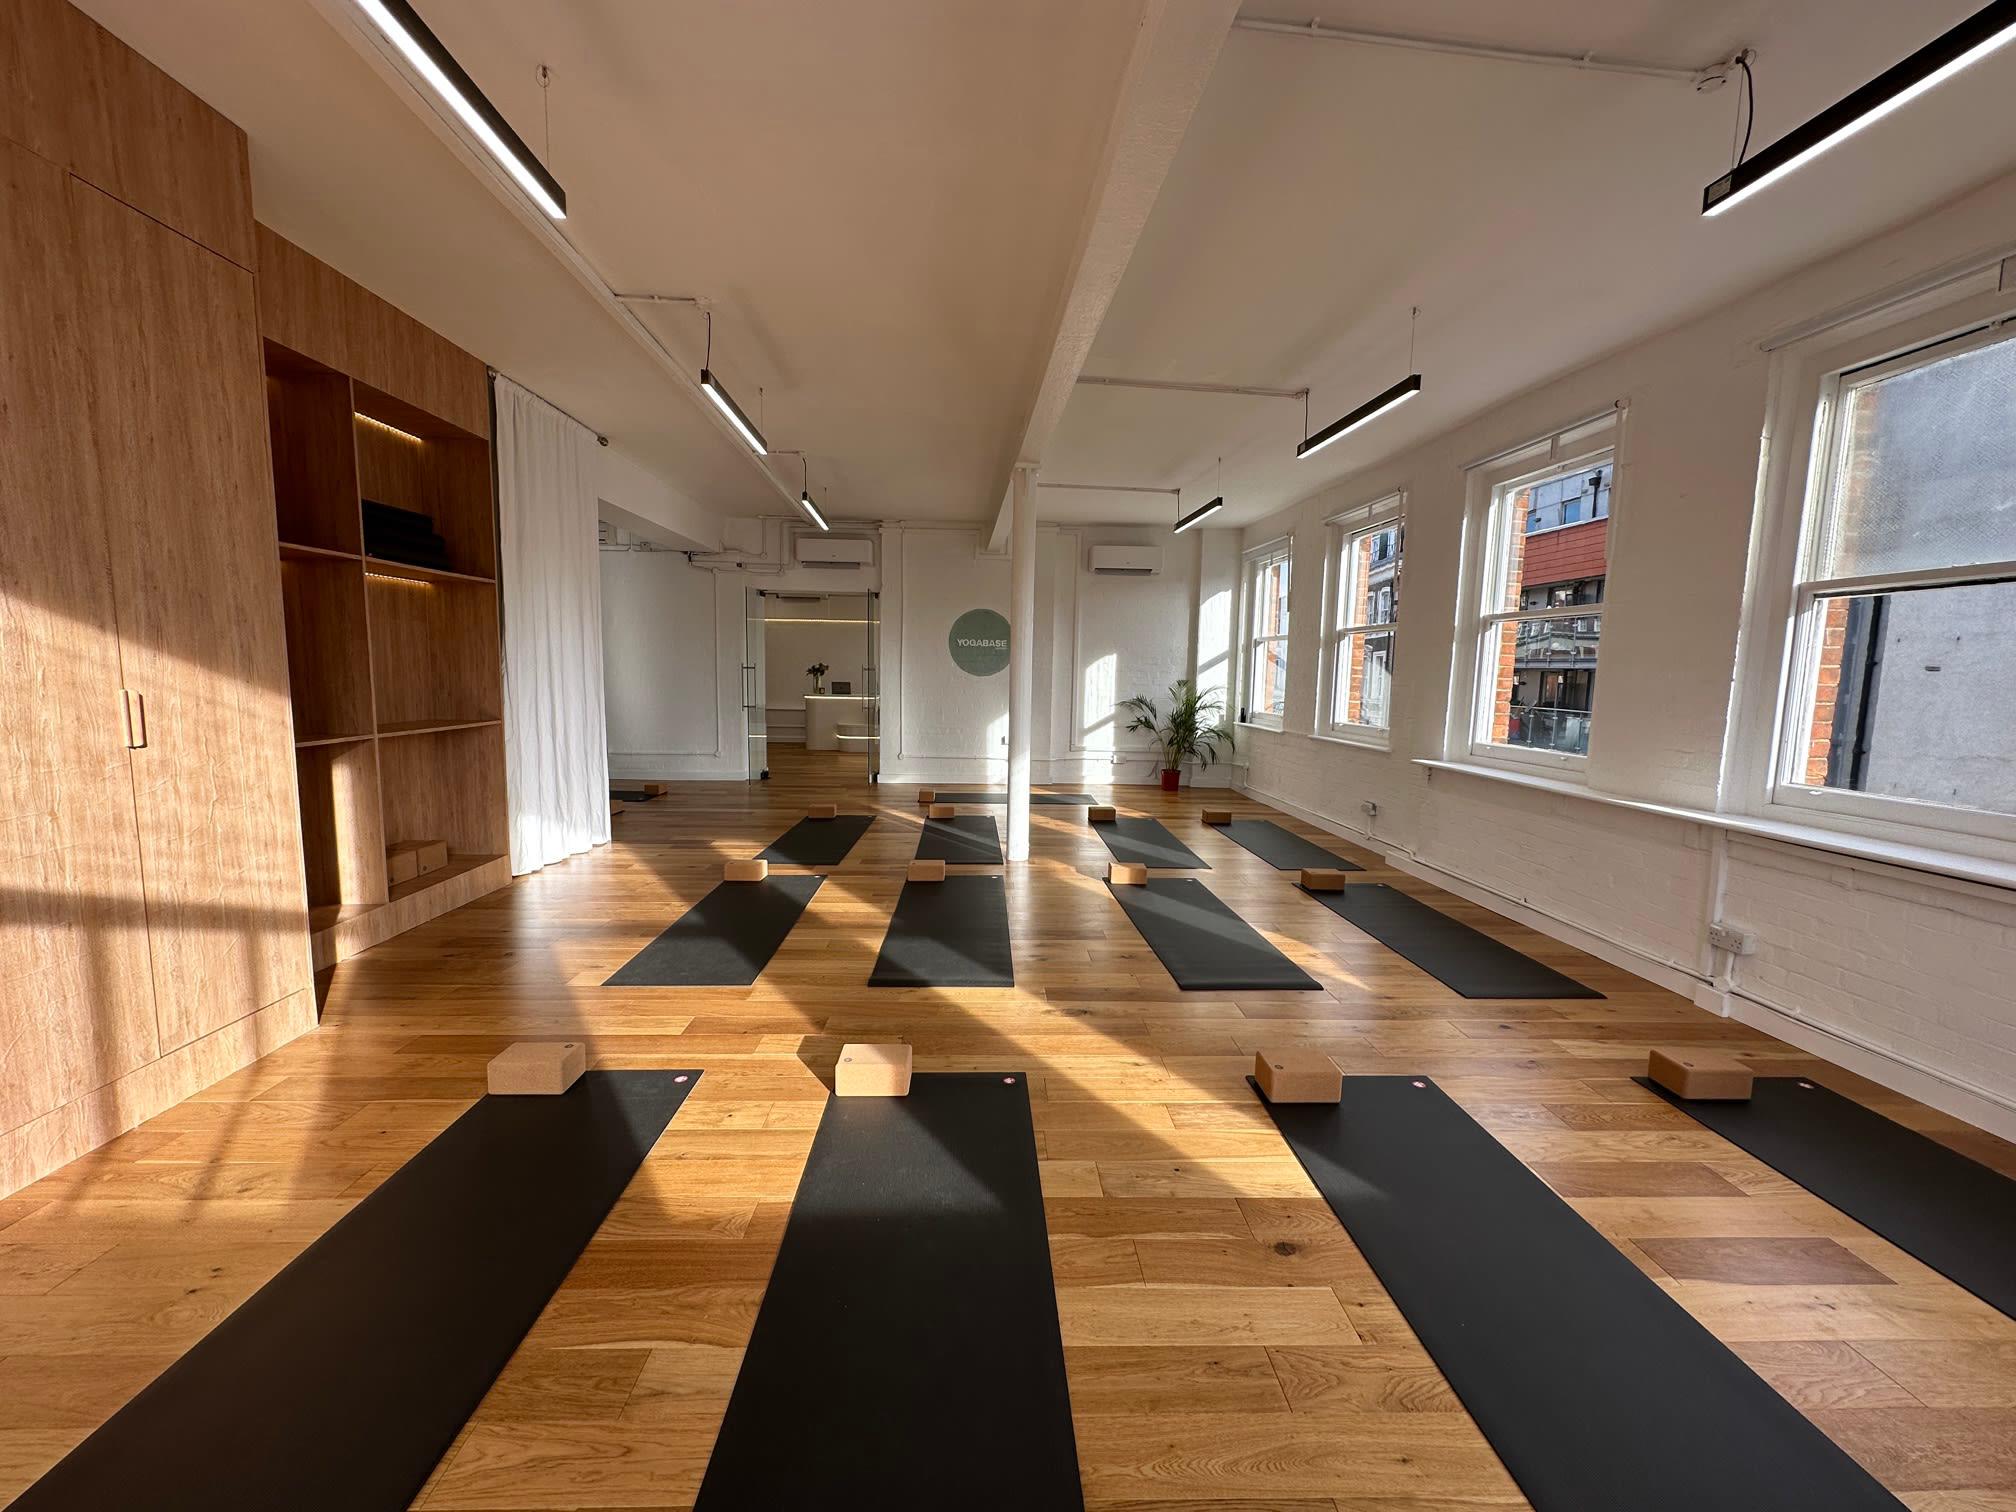 Images Yoga Base London